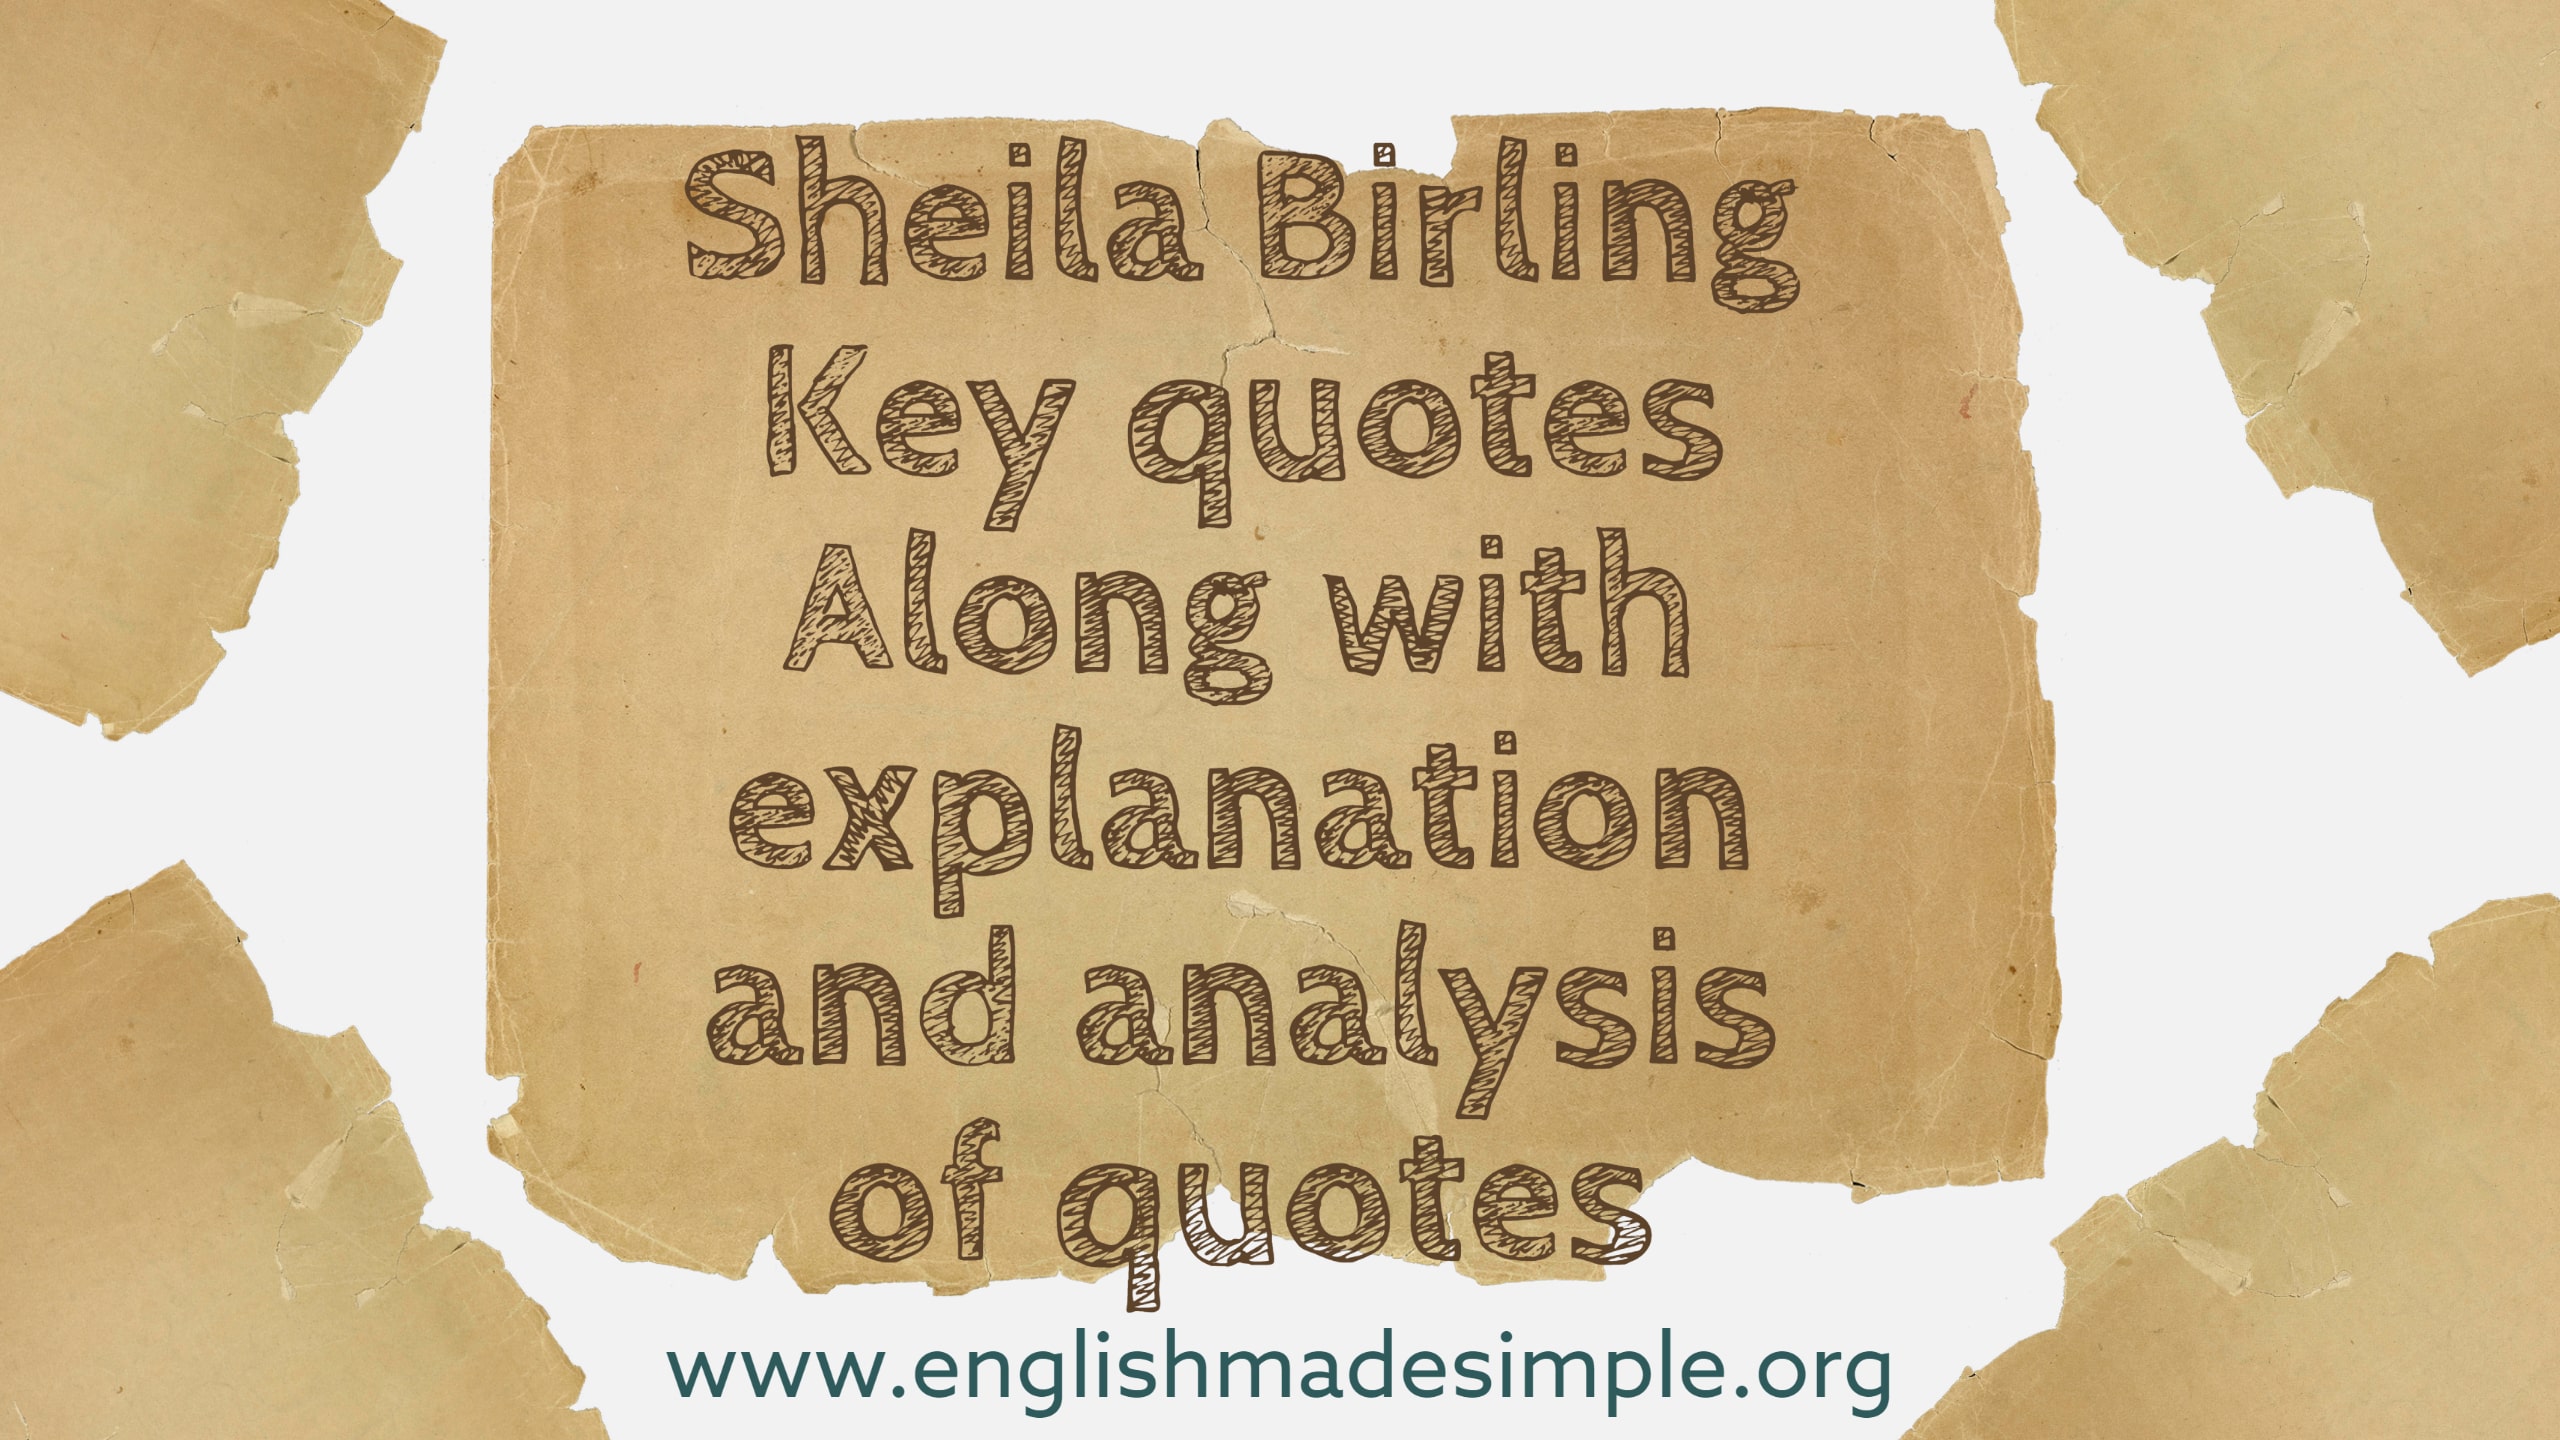 Sheila Birling